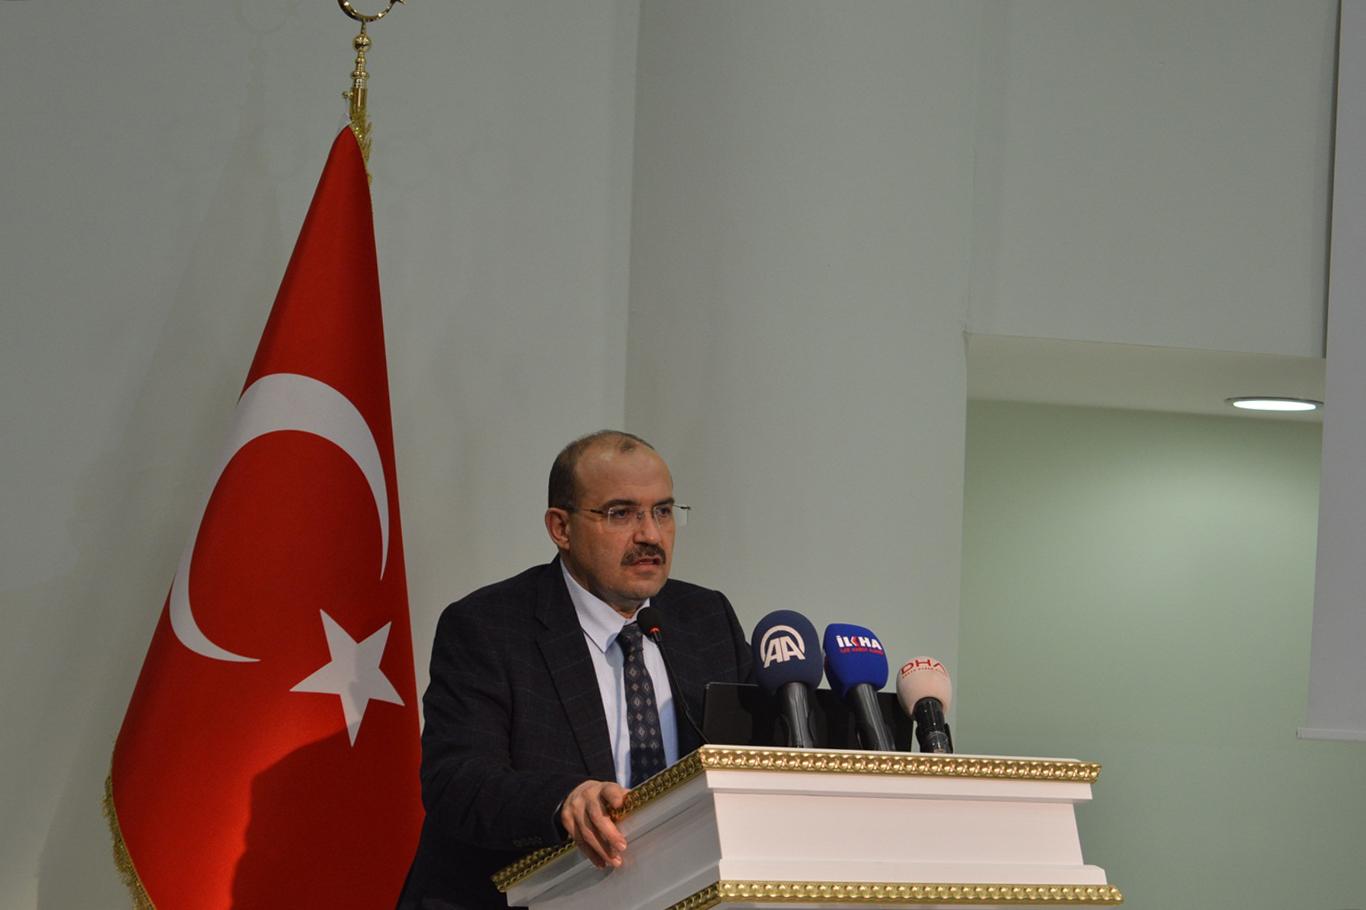 "2018 Bitlis’teki istihdam için önemli bir yıl olacak"